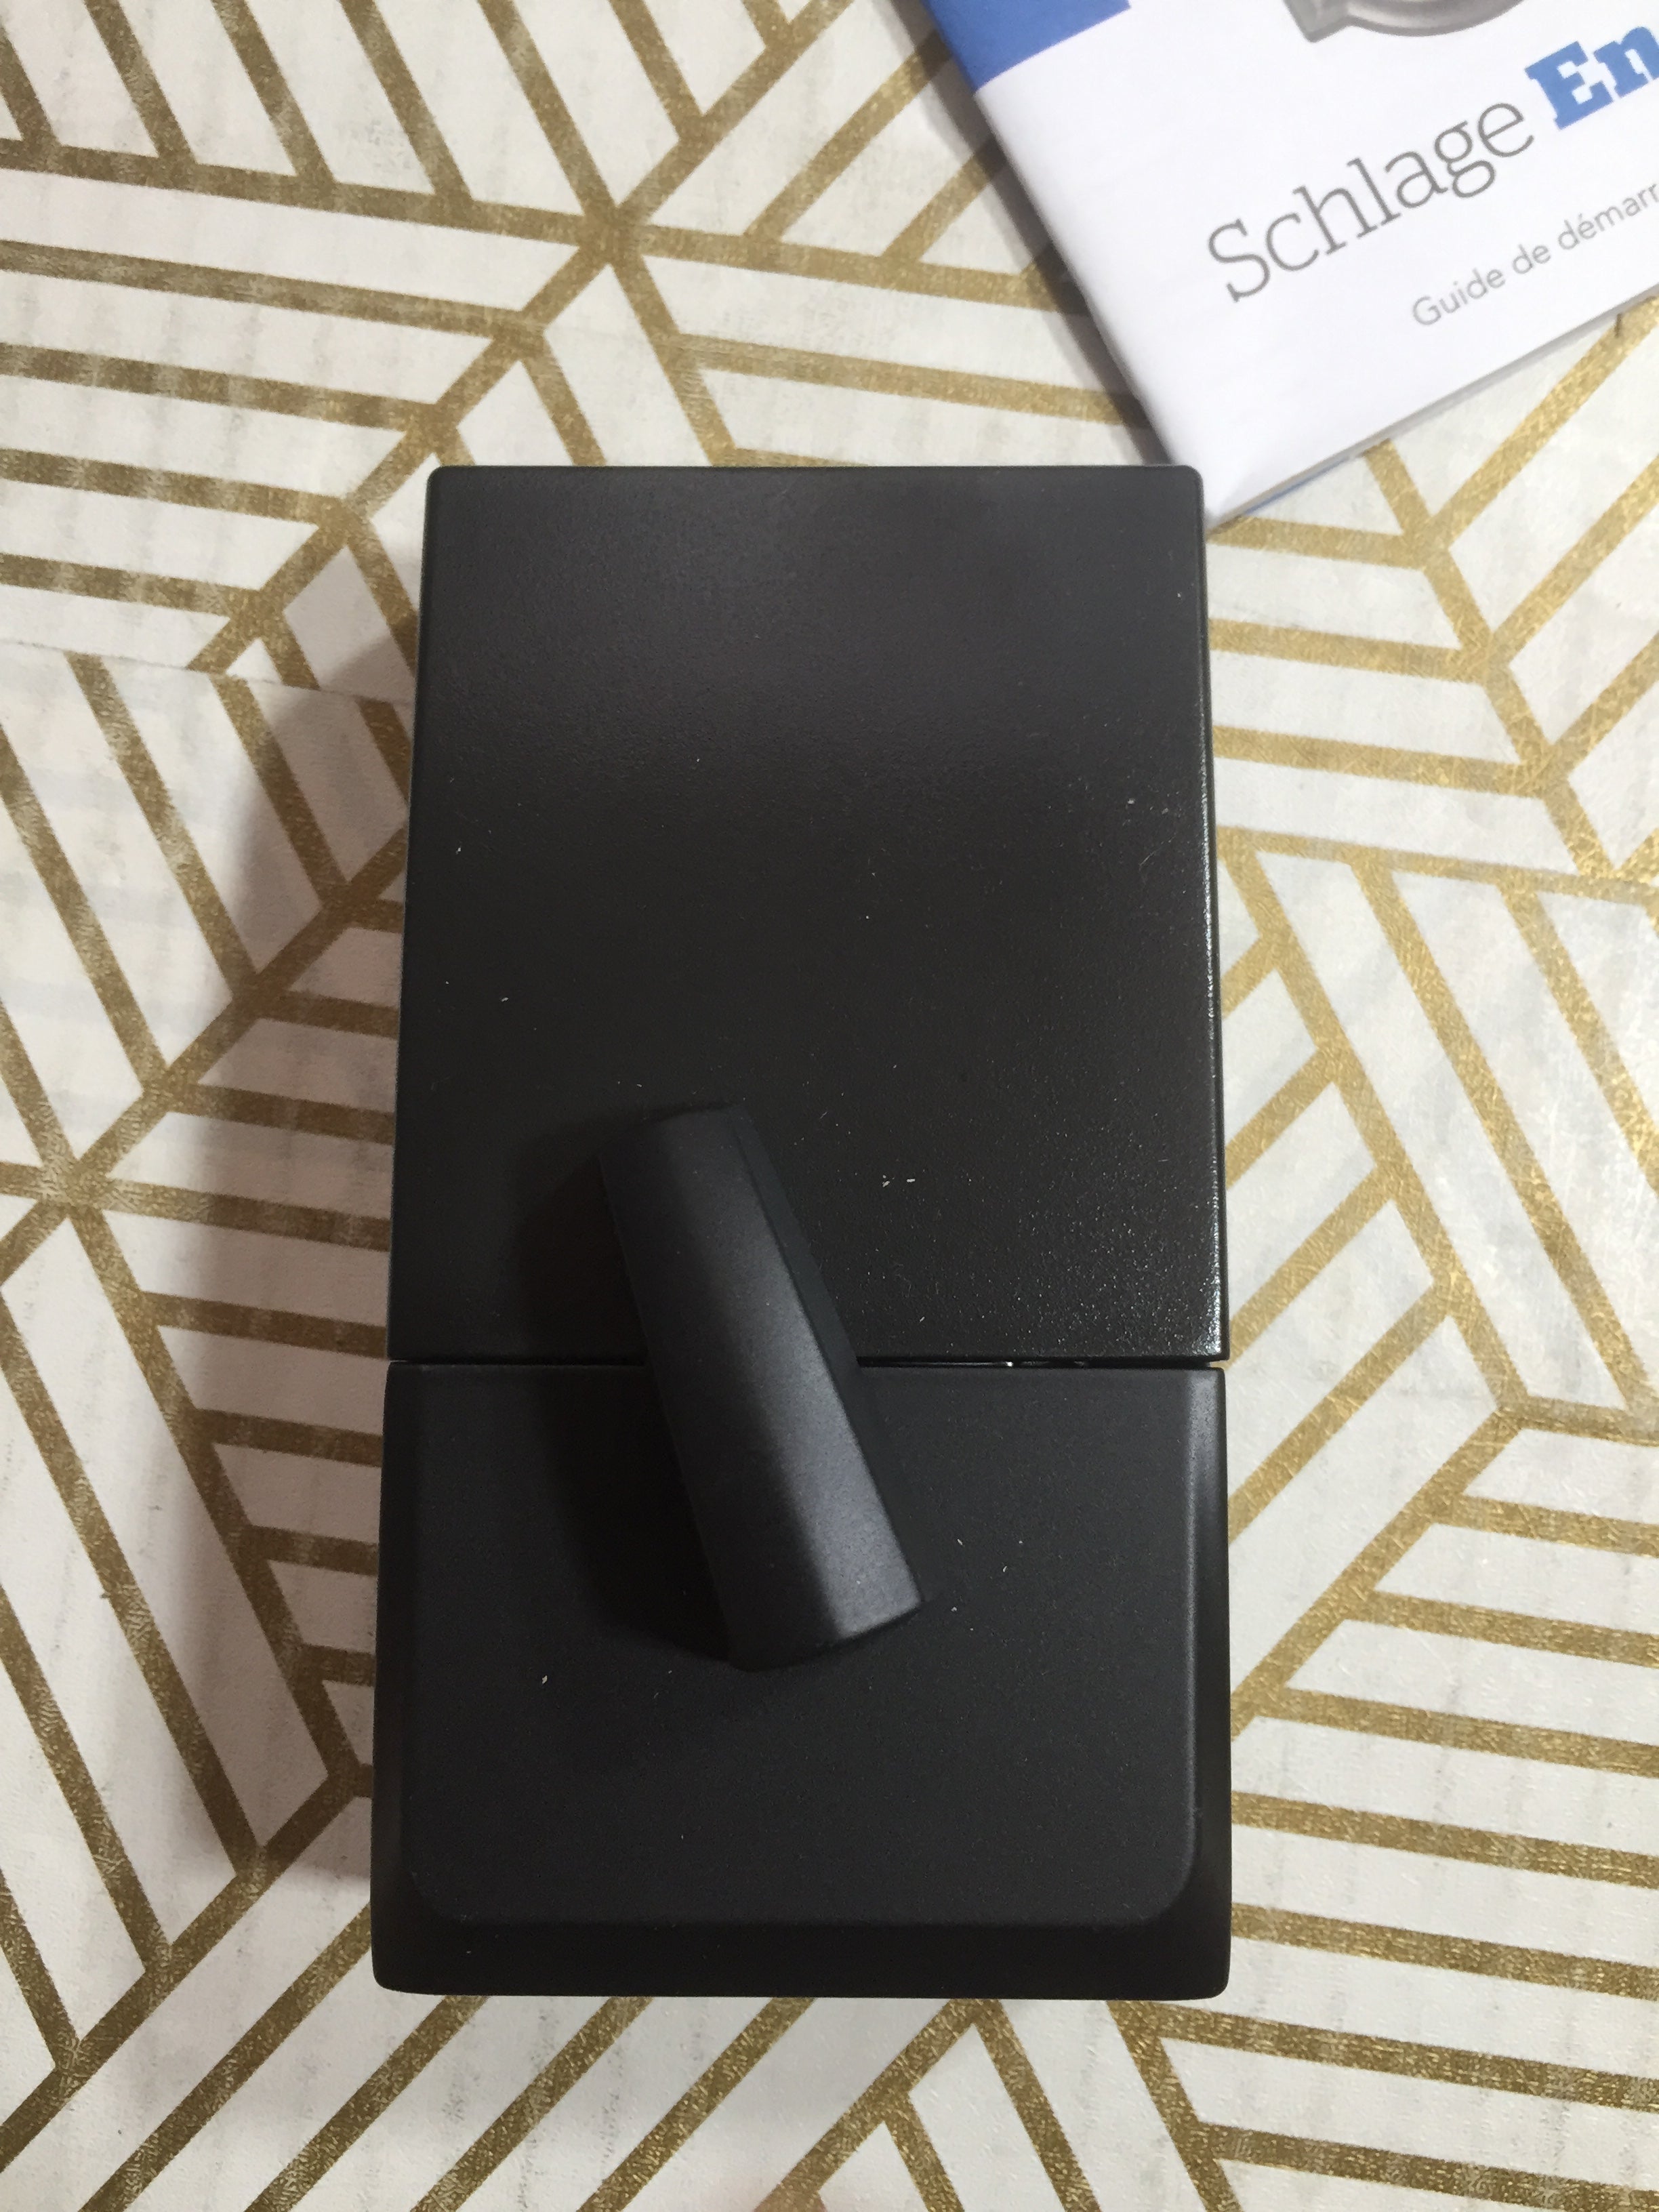 Schlage Encode Smart Wi-Fi Deadbolt with Century Trim in Matte Black *NEW* (8097497153774)